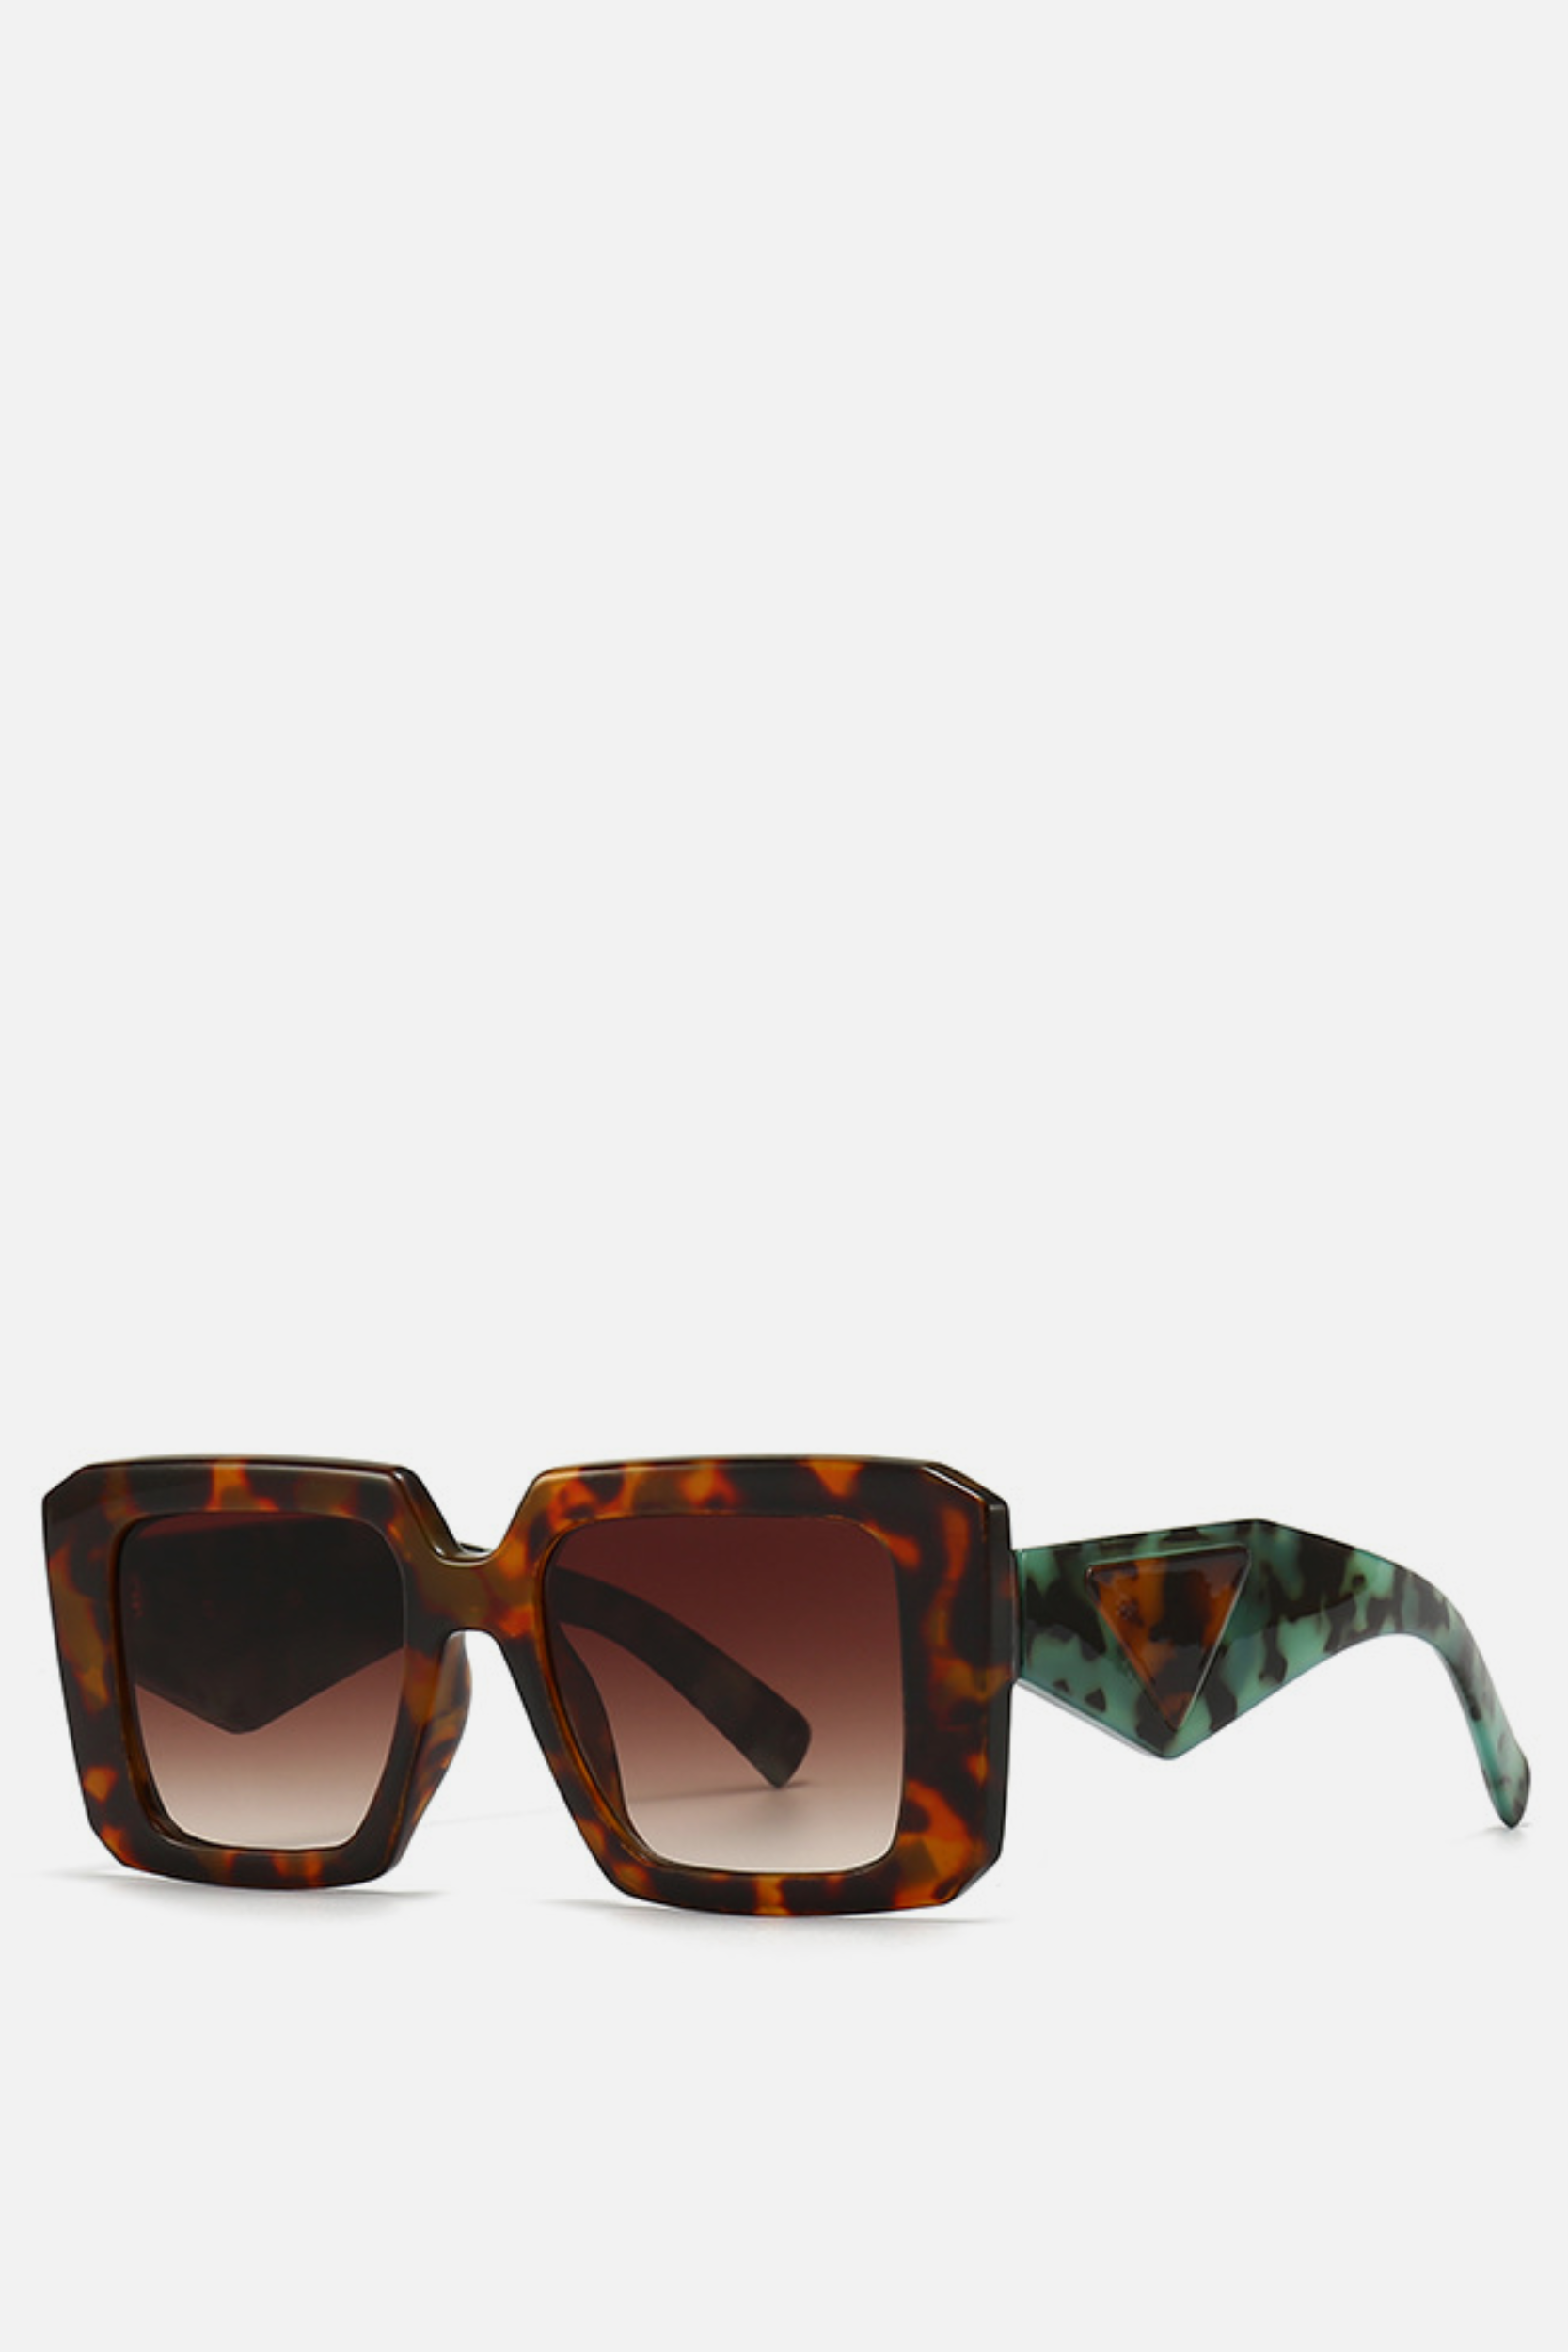 PERU Leopard Square Sunglasses